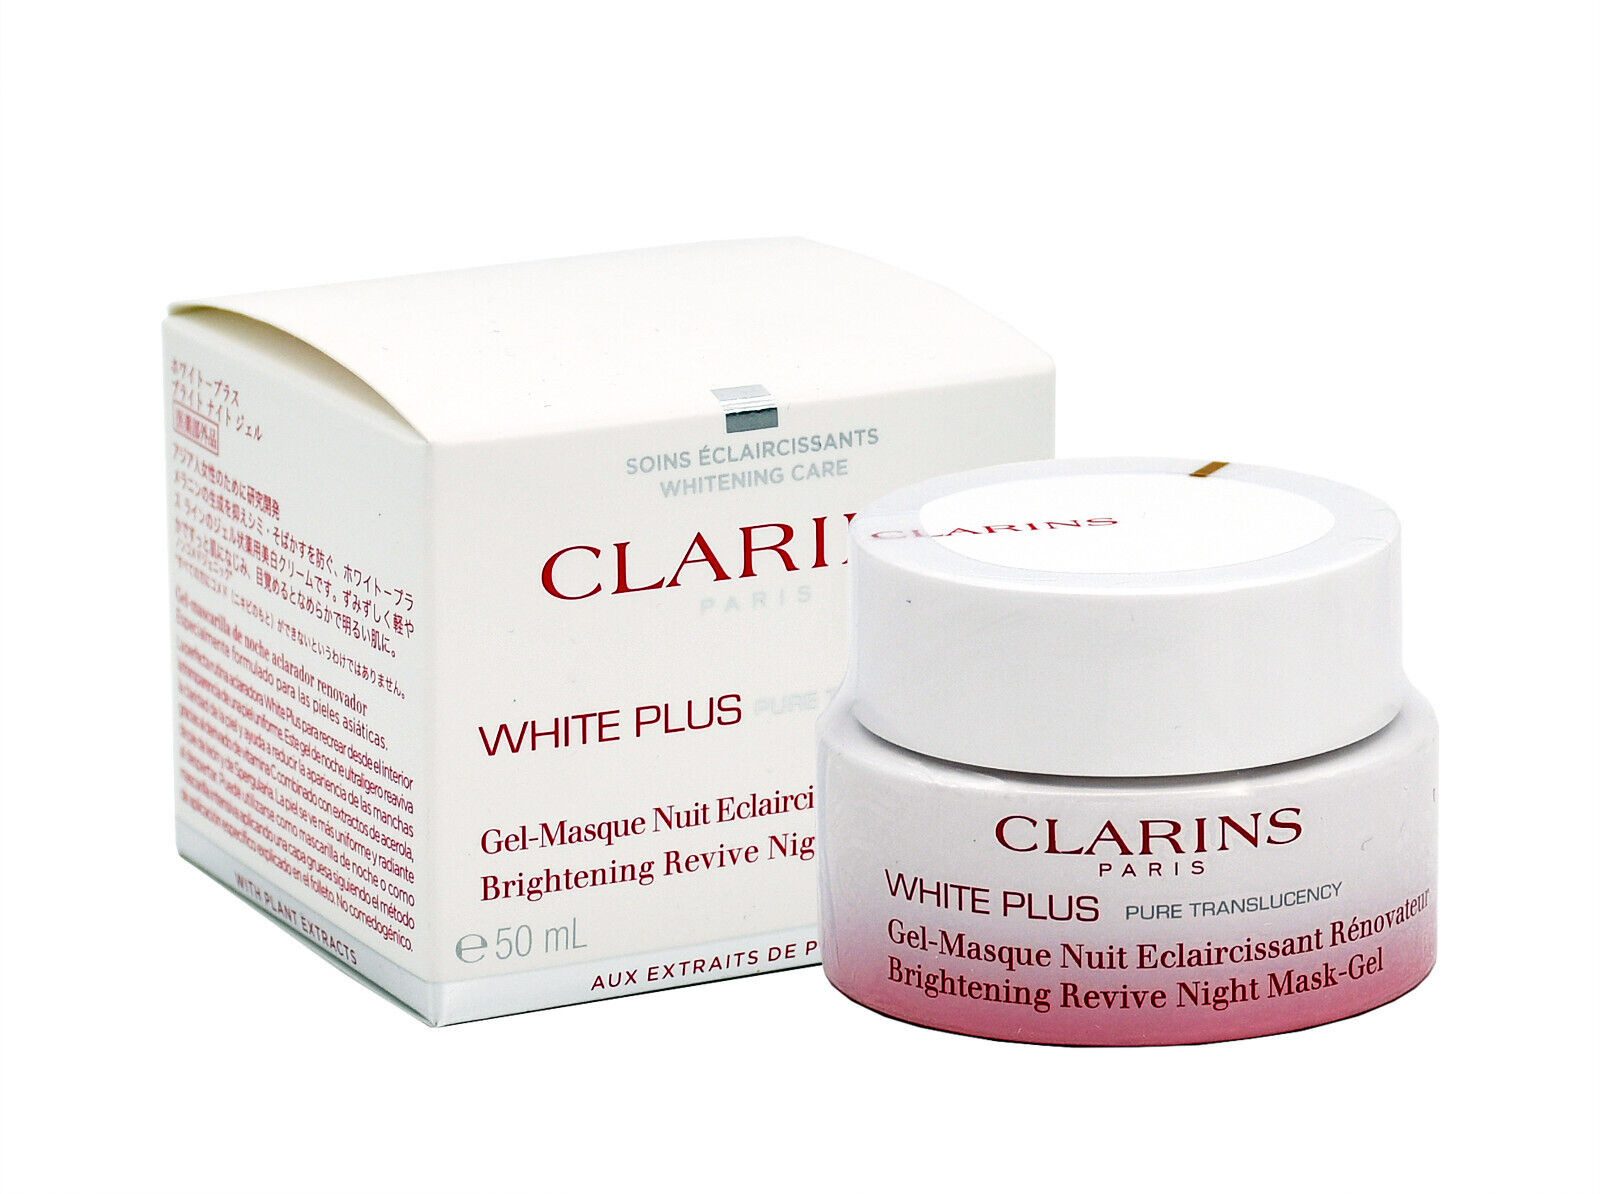 Clarins Gesichtsmaske Clarins White Plus Brightening Night Mask-Gel 50ml